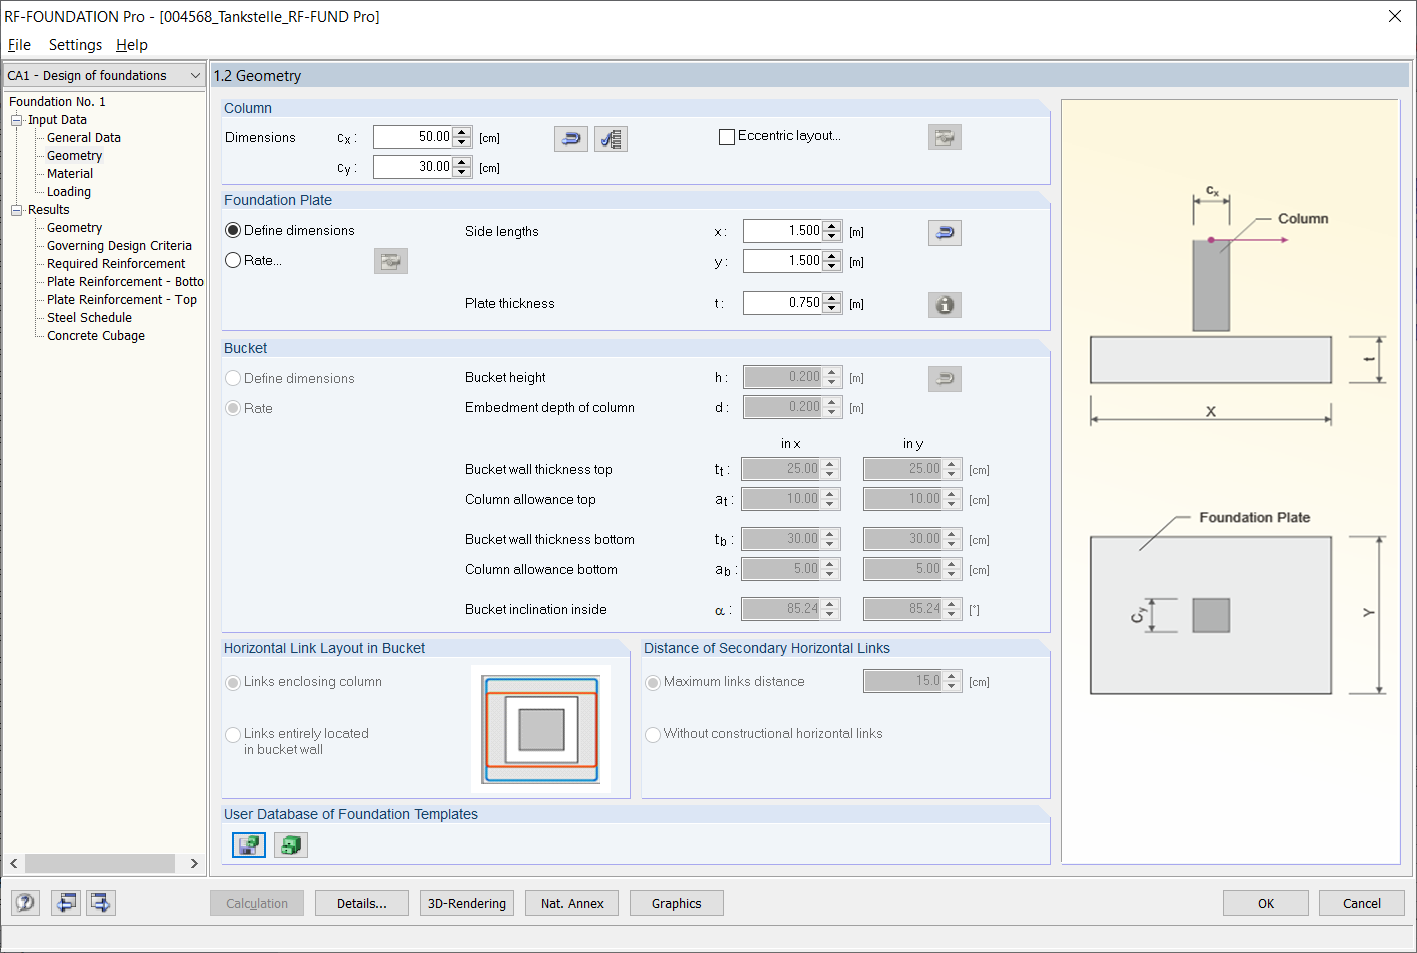 Okno „Geometria 1.2” w RF-/FOUNDATION Pro